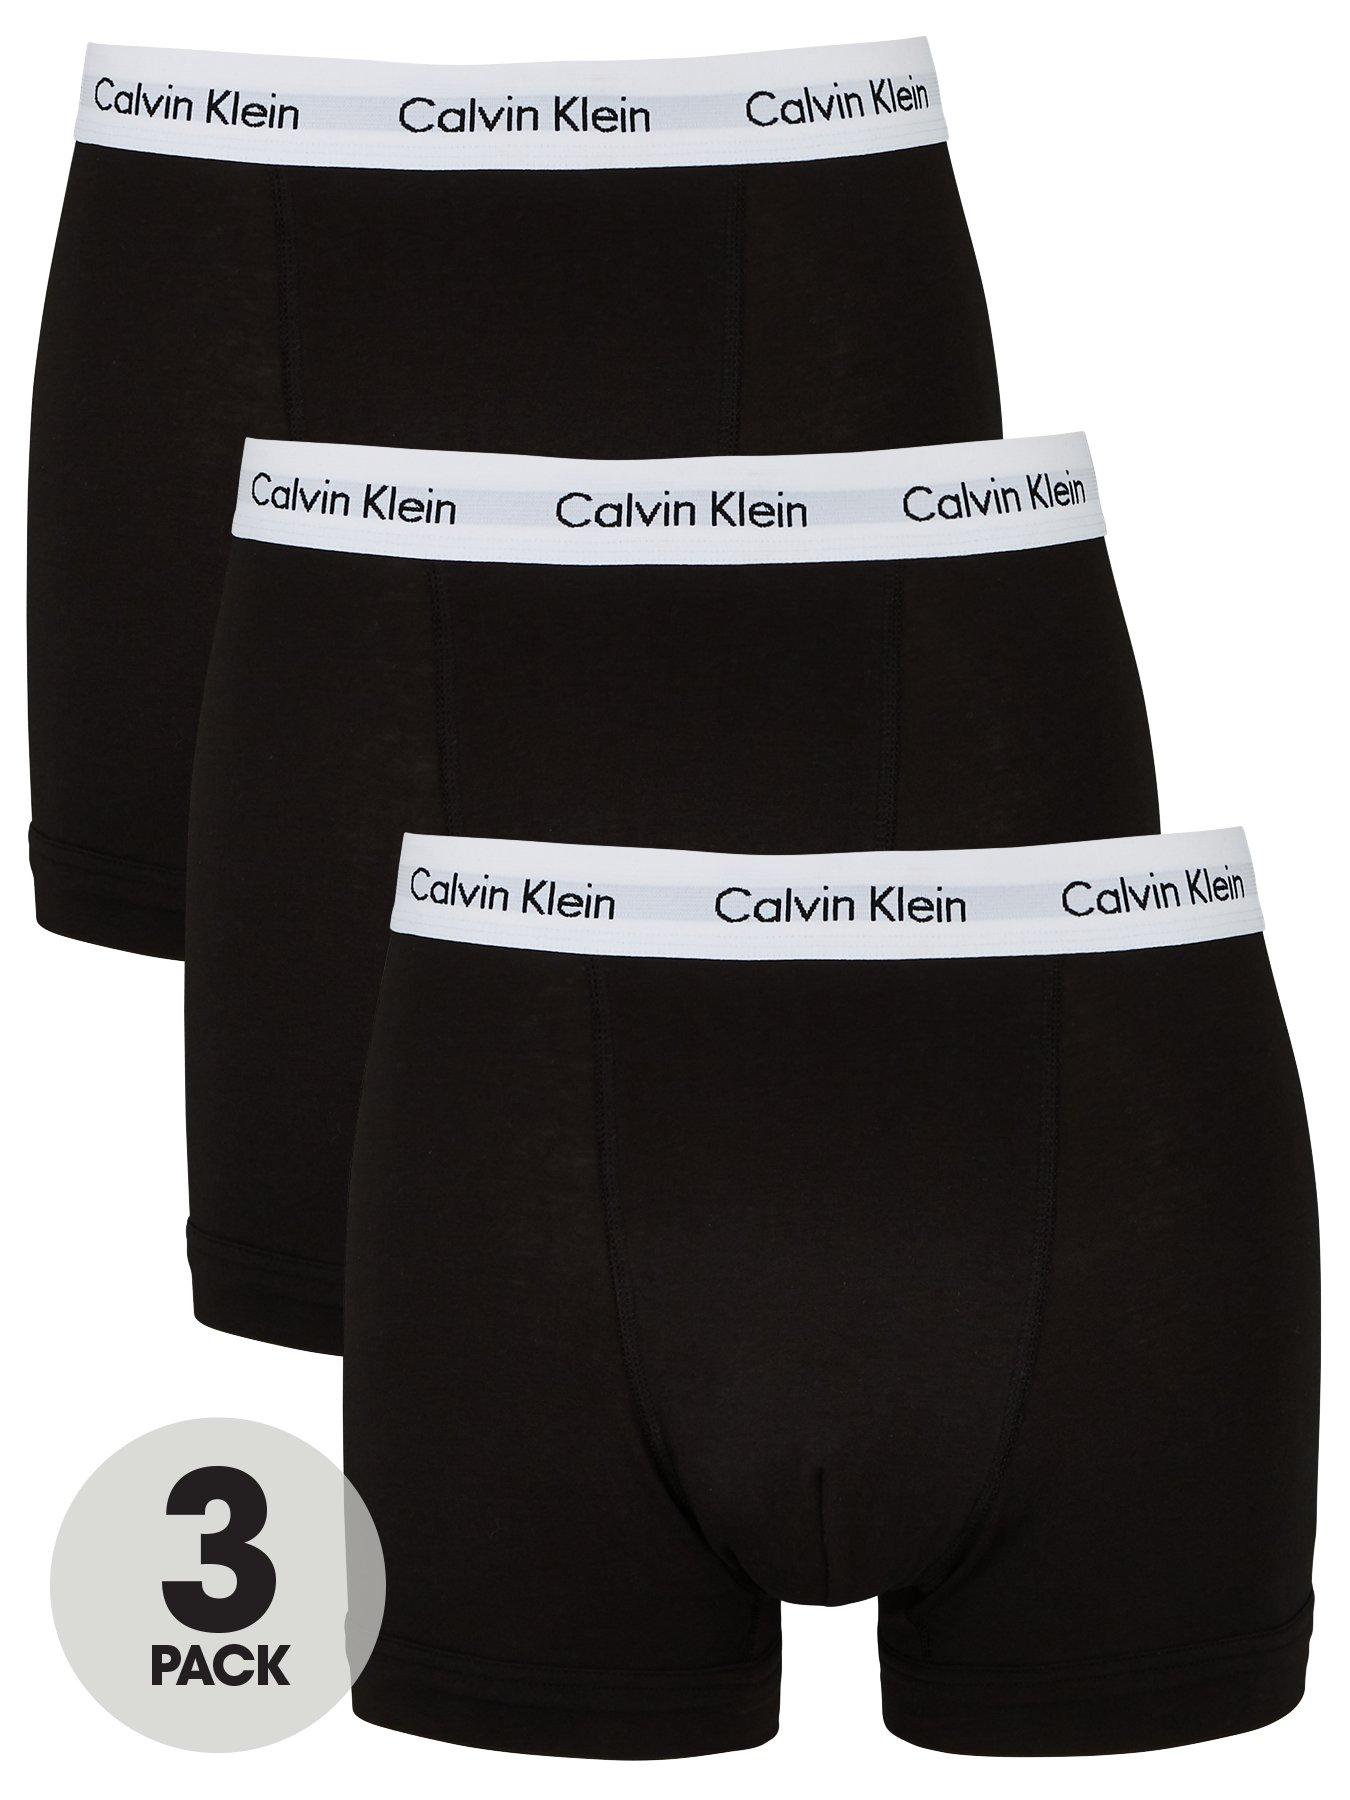 calvin klein boxer trunks